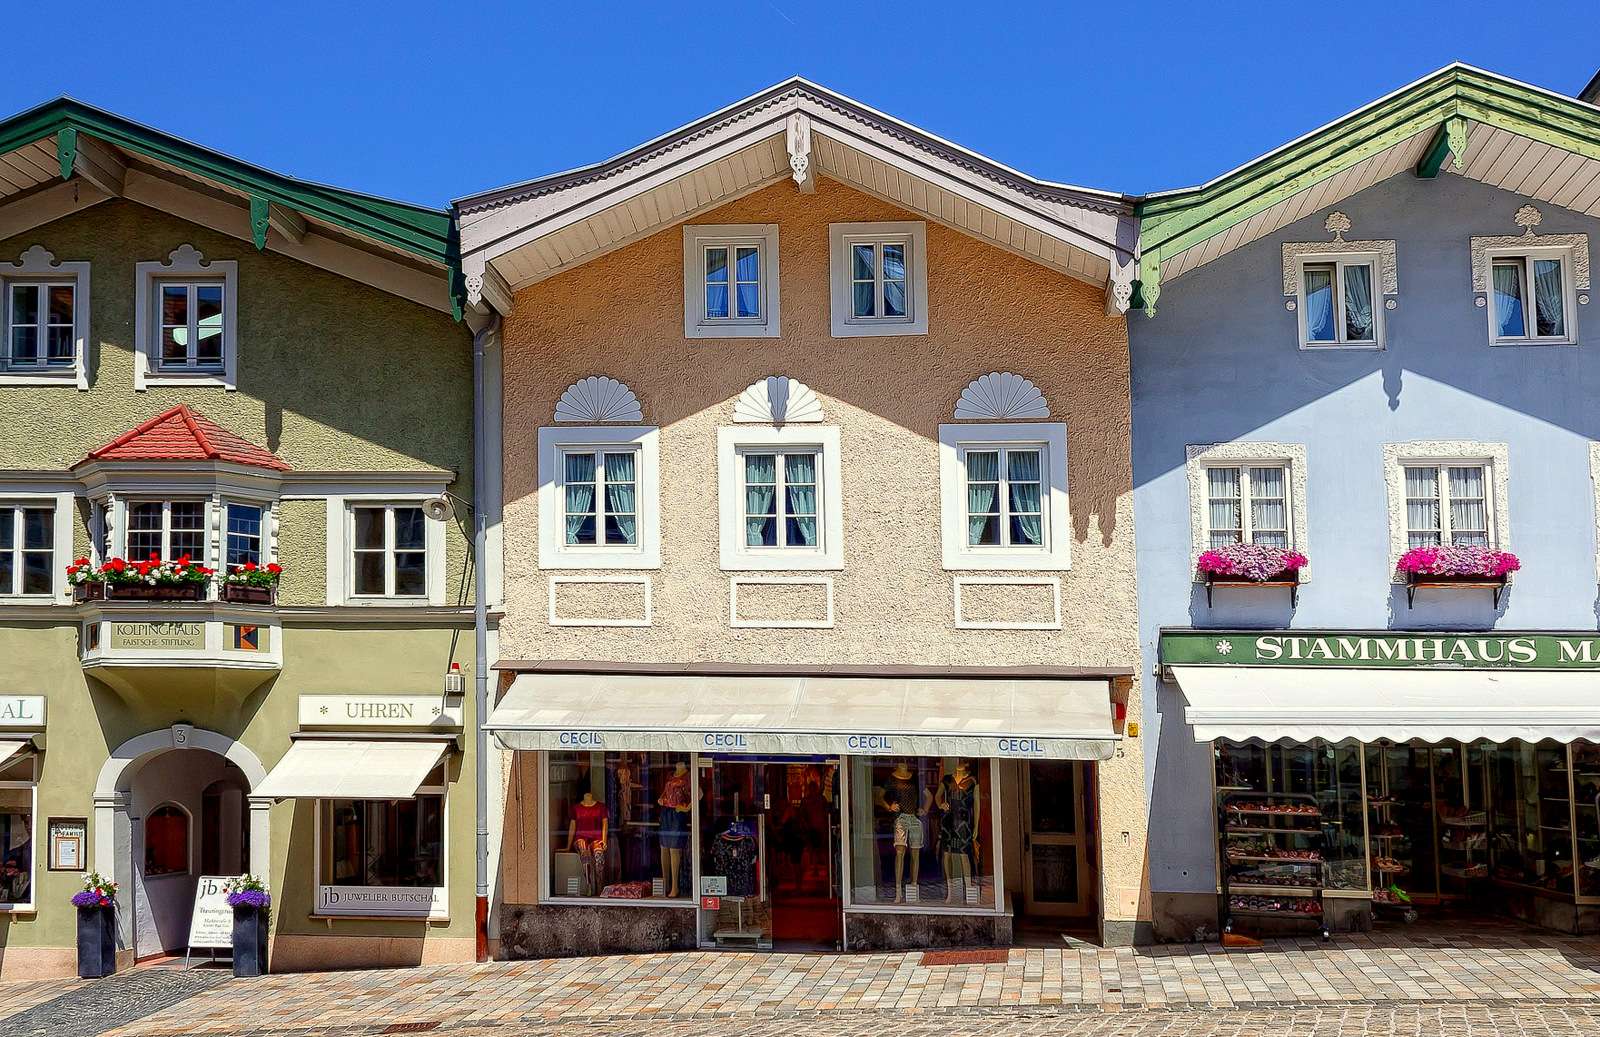 Многоквартирные дома с магазинами в городе Бад-Тёльц пазл онлайн